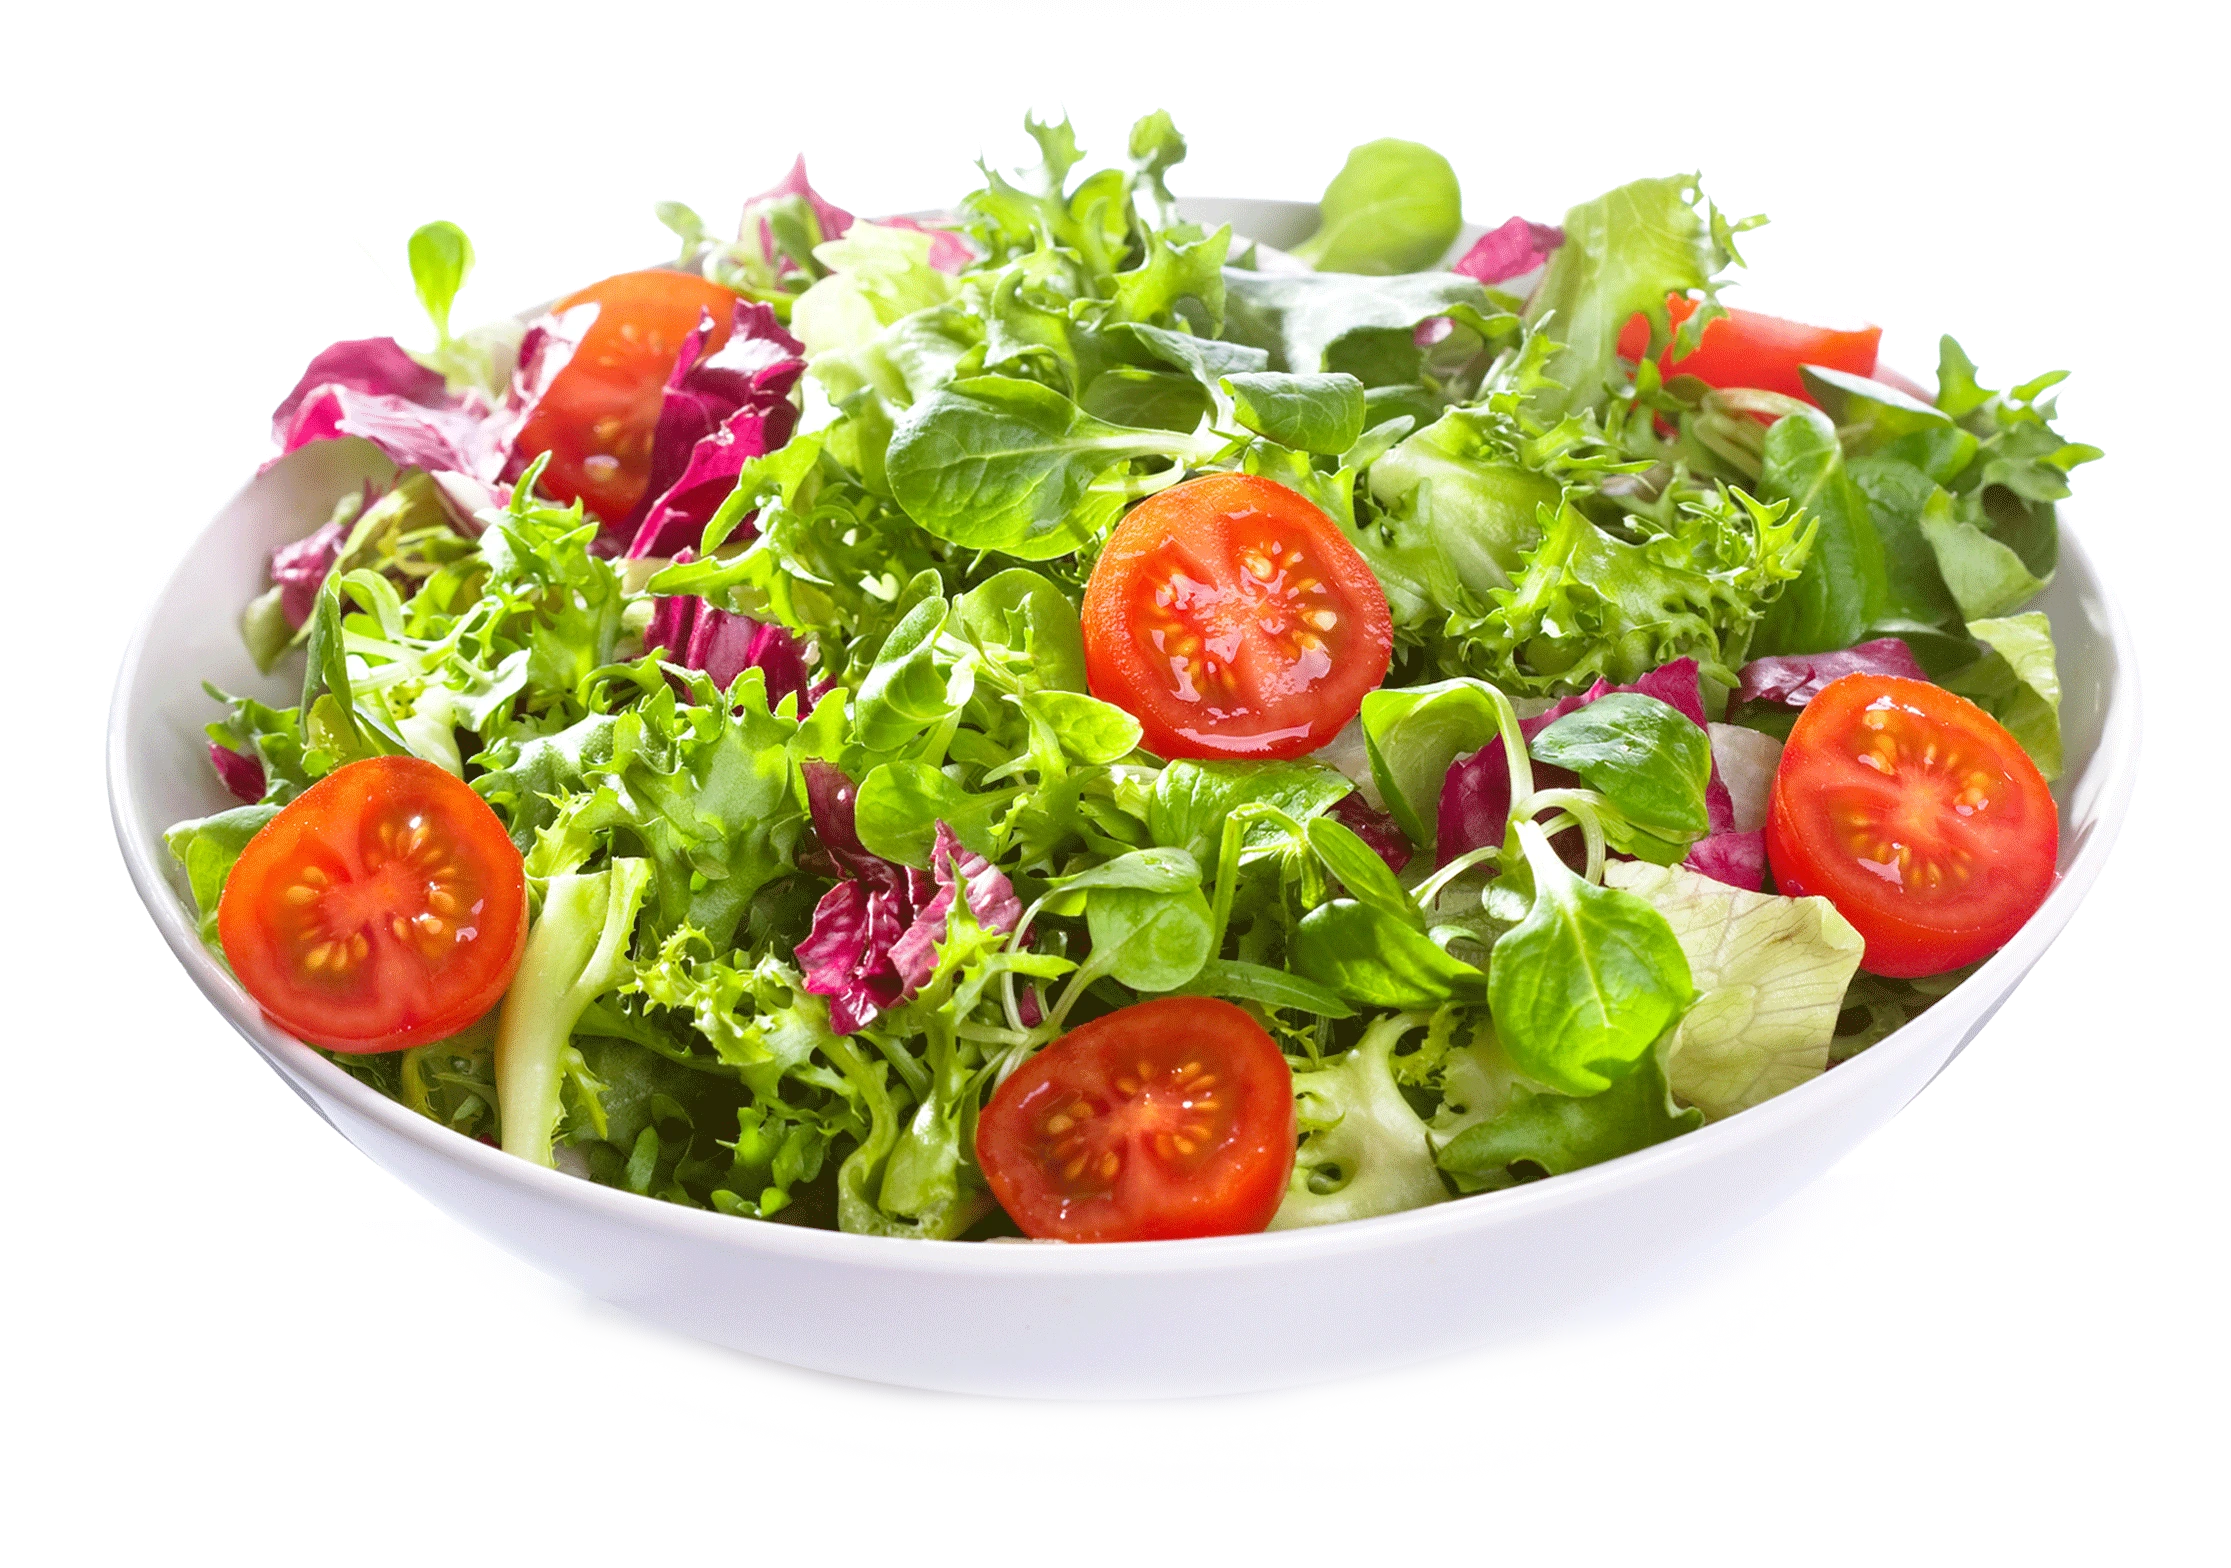 Al's Salads